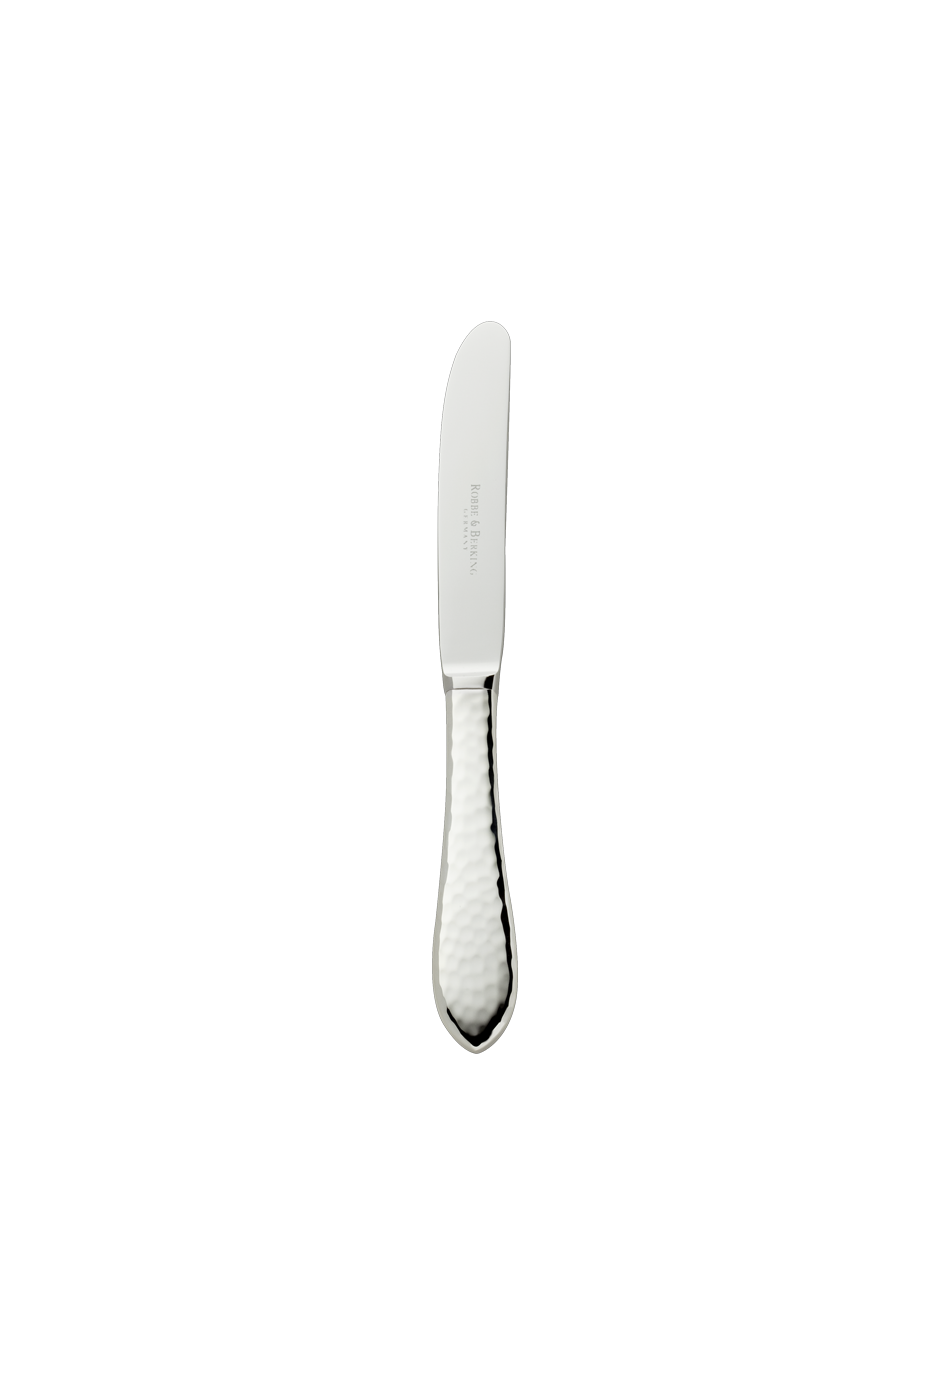 Ein Kuchenmesser Robbe & Berking Martelé 150 mit abgerundeter Spitze und strukturiertem Griff, der an die Handwerkskunst von Robbe & Berking erinnert, ist auf einem schlichten schwarzen Hintergrund zentriert. Auf der Klinge ist ein Text zu sehen. Das Design des Messers ist schlicht und funktional.